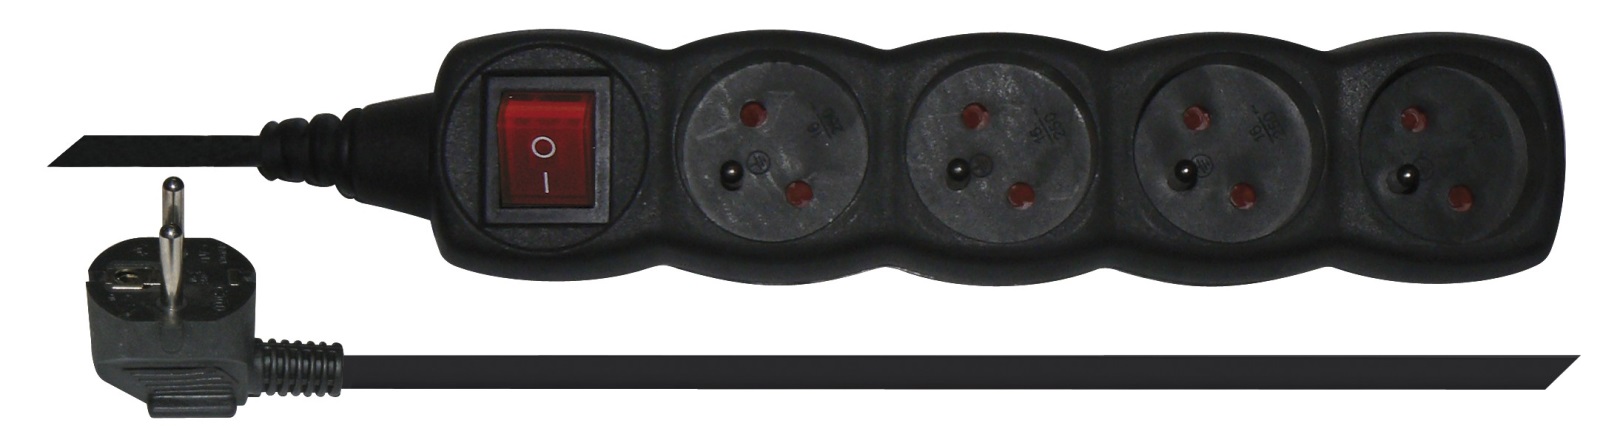 Prodlužovací kabel 3 m / 4 zásuvky / s vypínačem / černý / PVC / 1 mm2, 1902340300